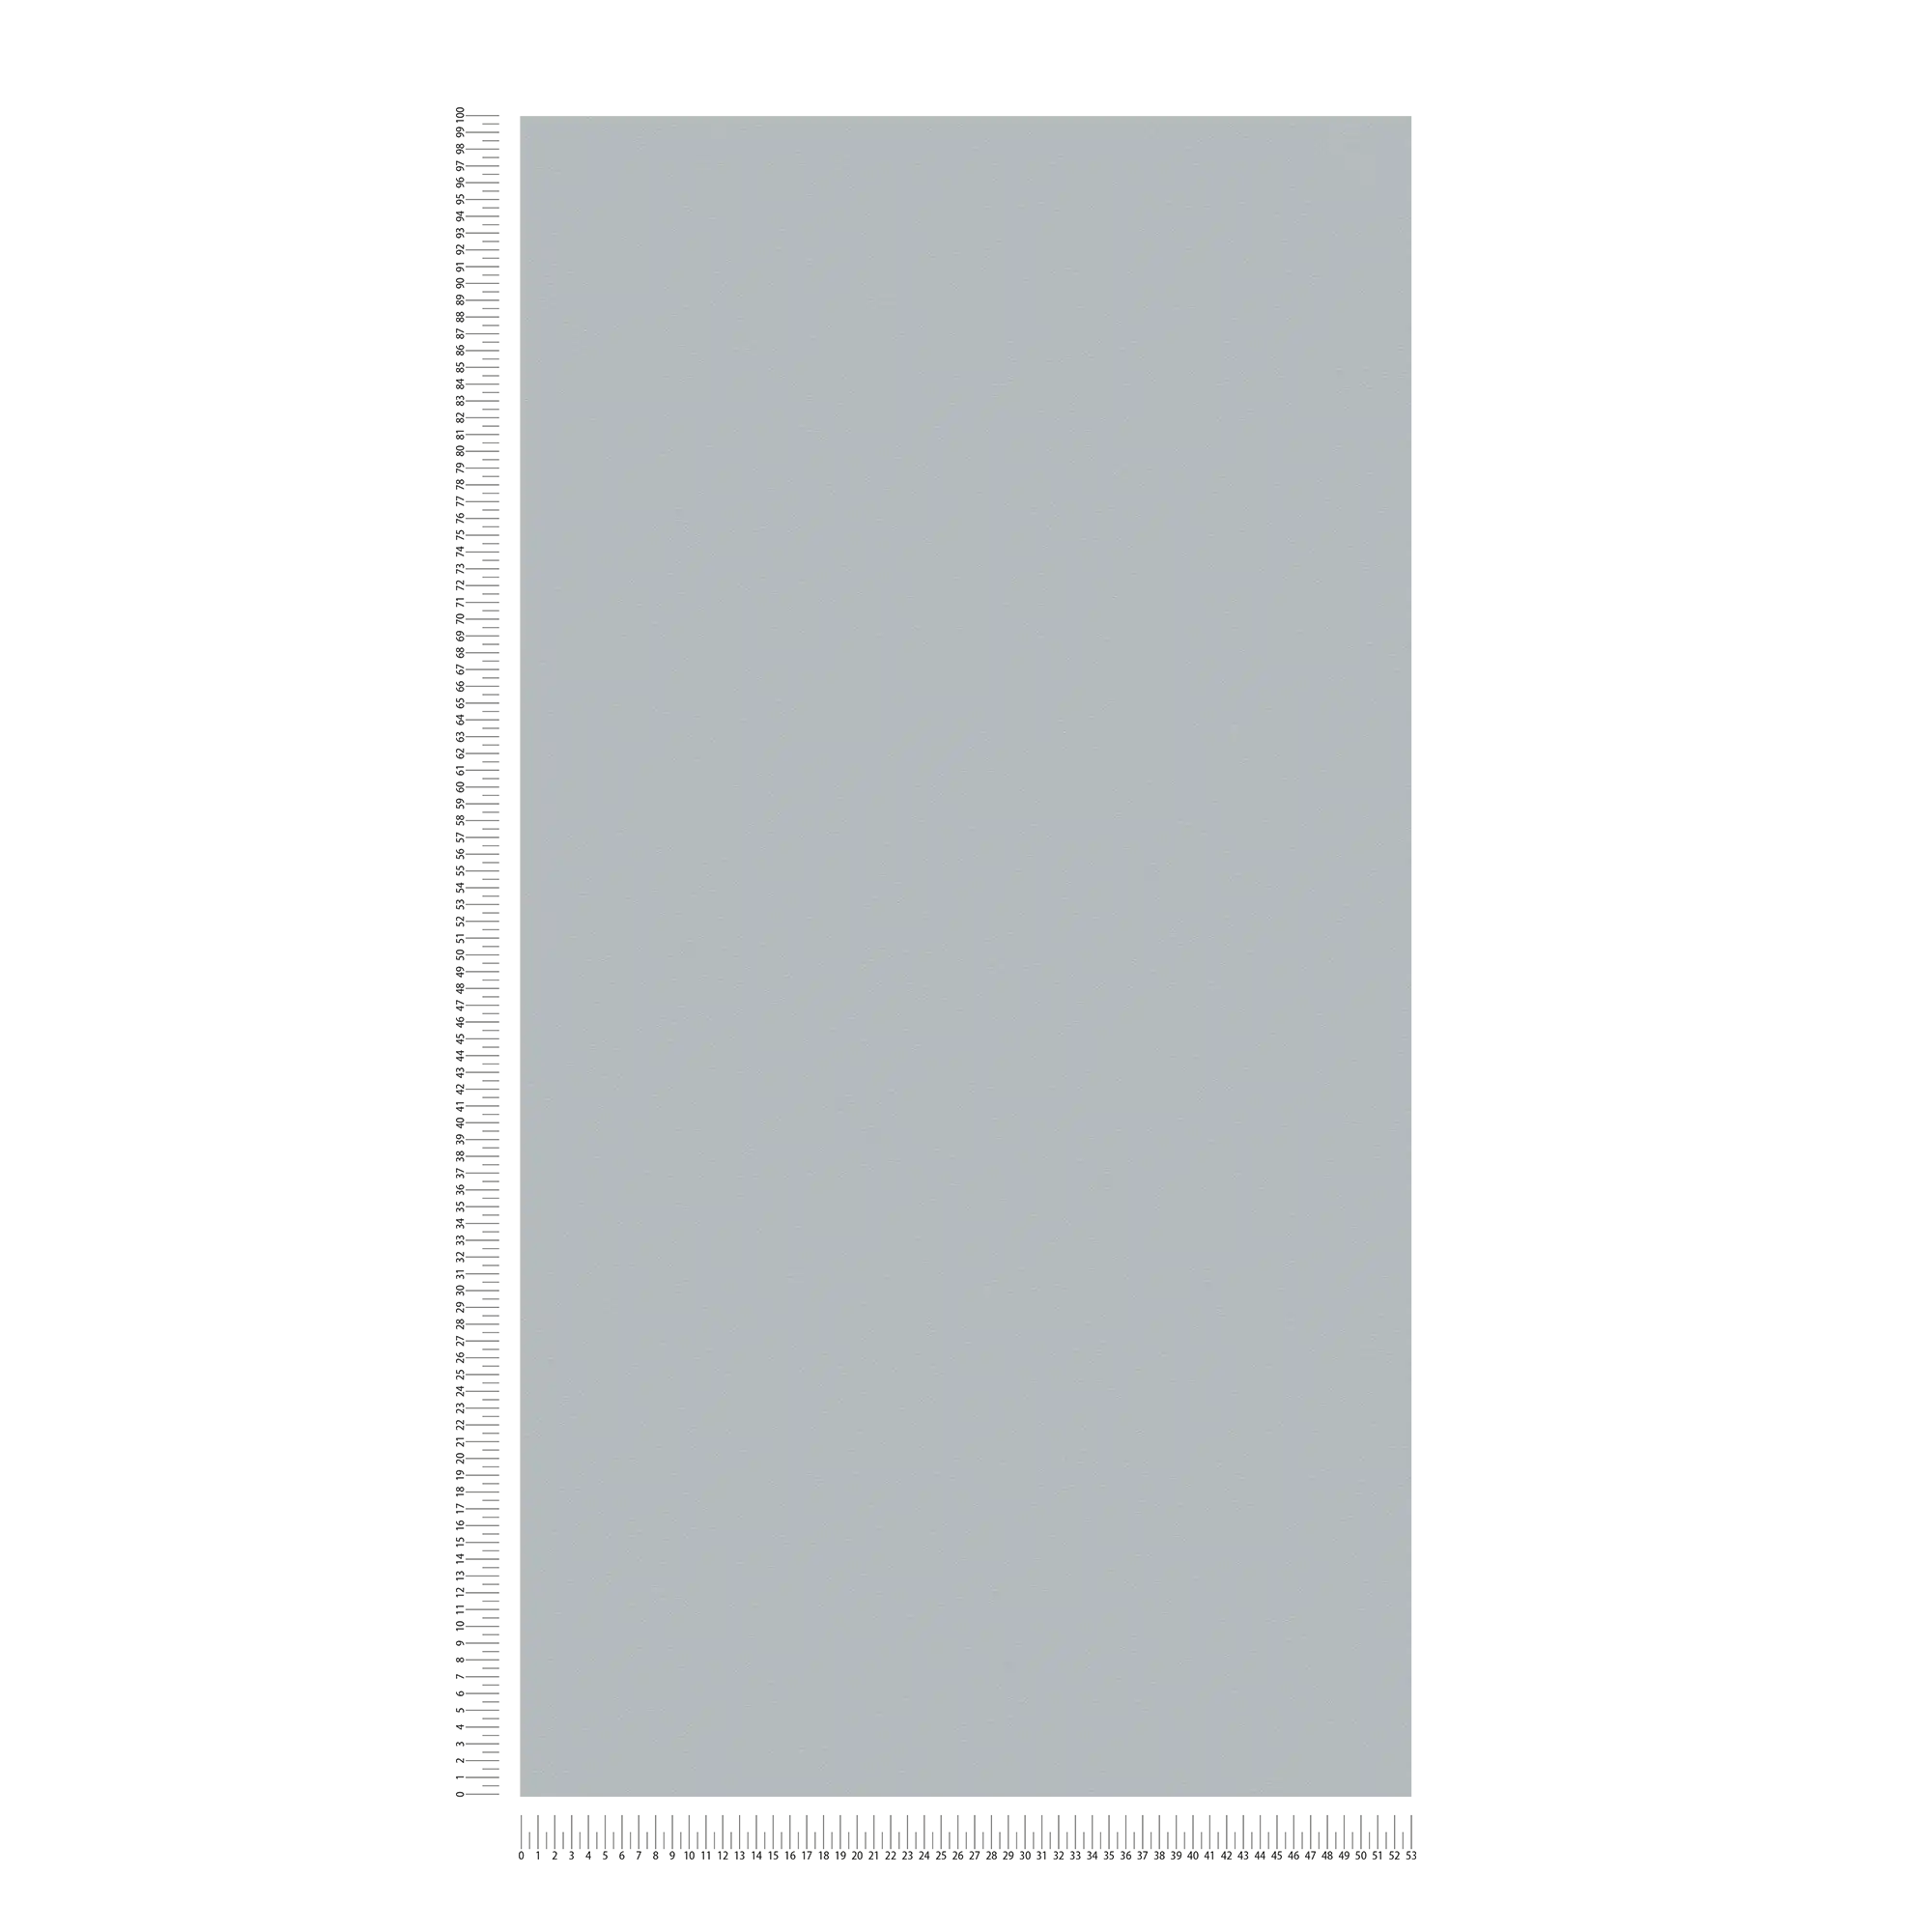             Non-woven wallpaper stone grey monochrome, matt & with foam structure
        